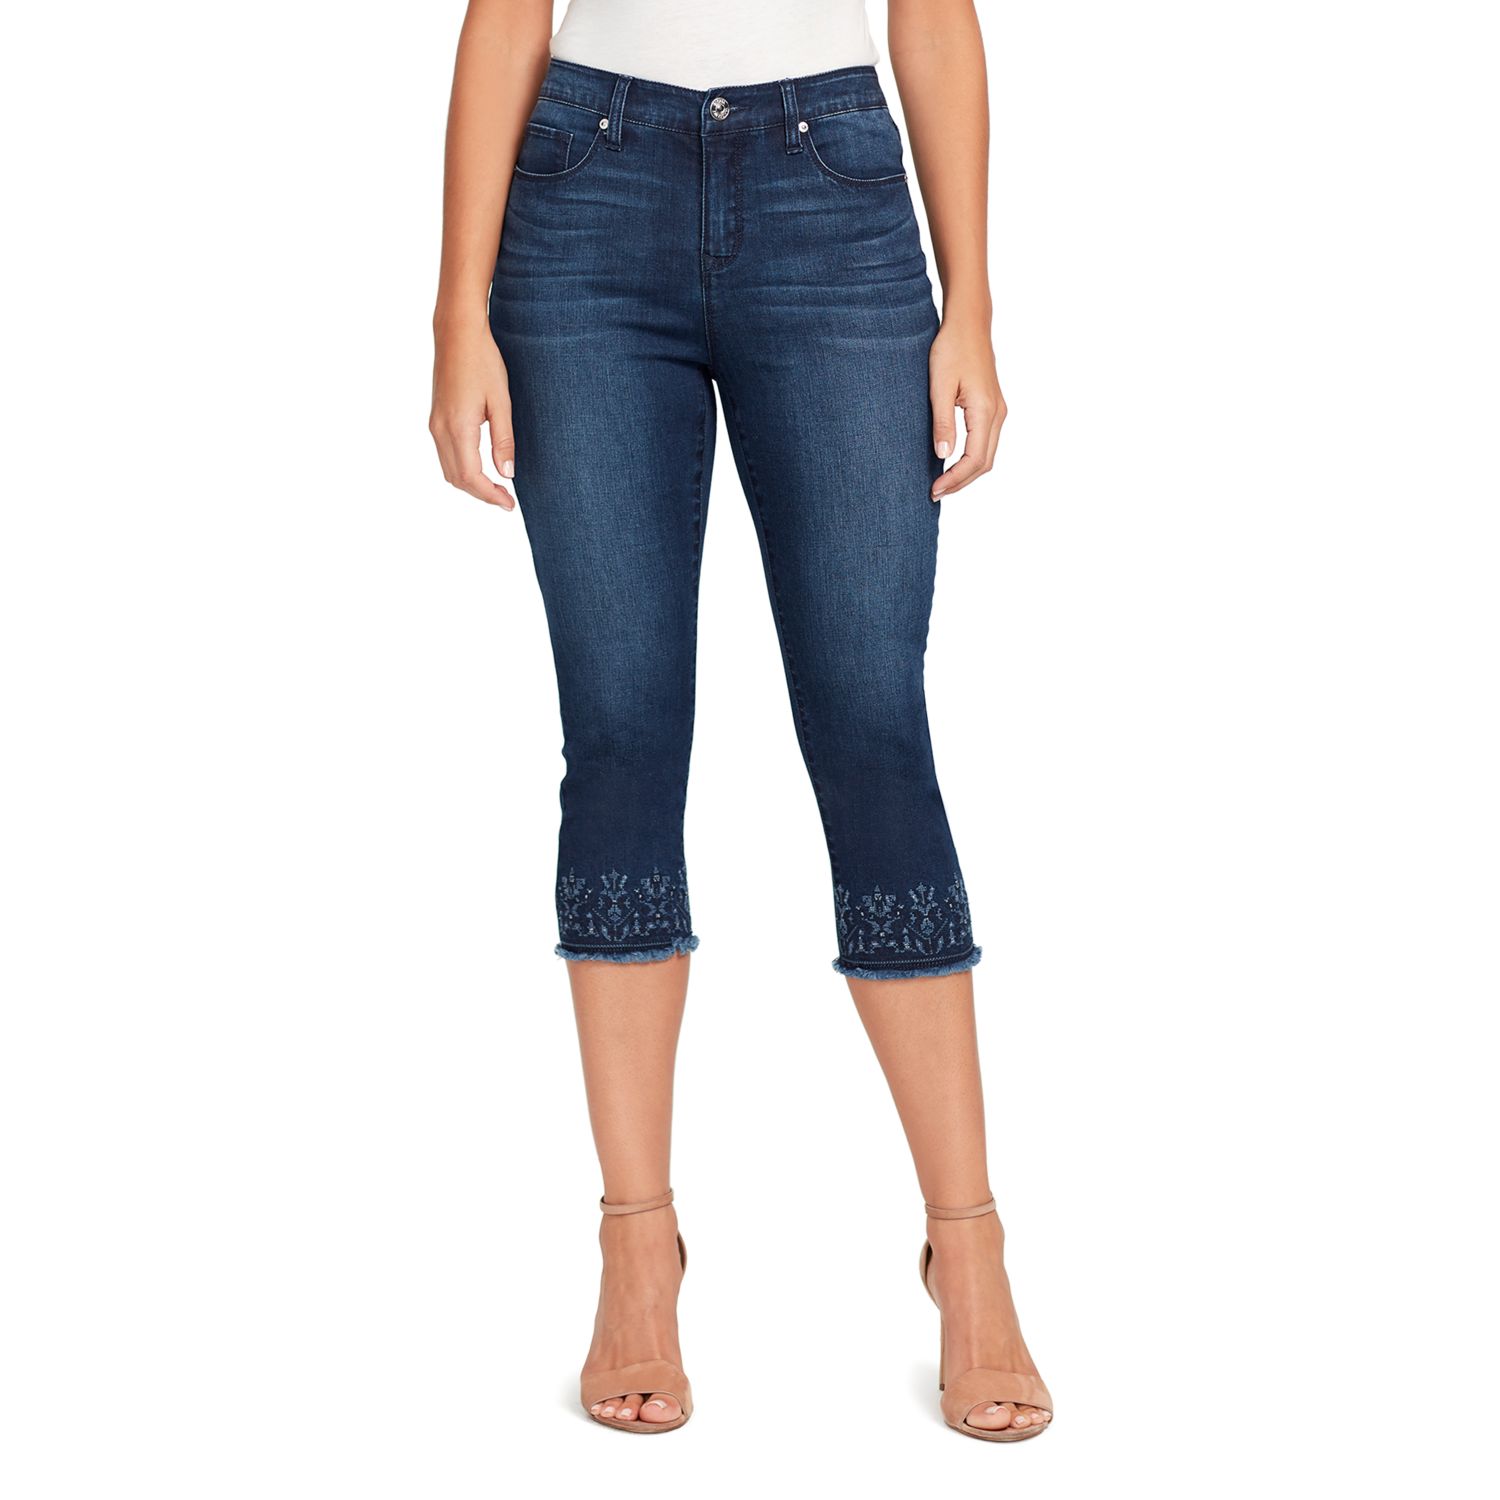 Gloria Vanderbilt Jessa Frayed Capris Jeans